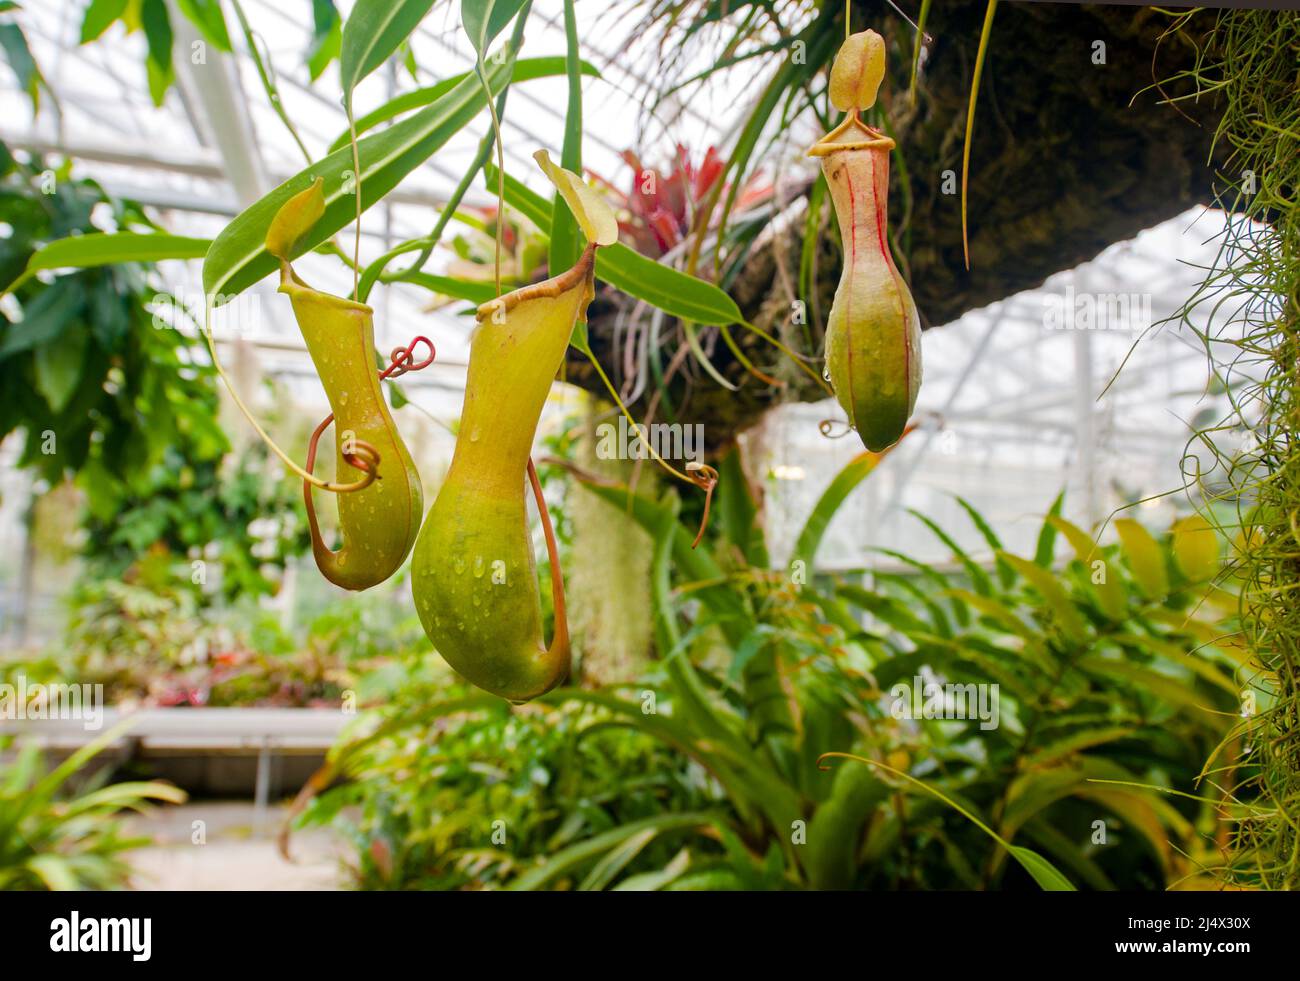 Die jardins suspendus (Hanging Gardens) von Le Havre, Frankreich, enthalten Gewächshäuser mit tropischen und fleischfressenden Pflanzen Stockfoto